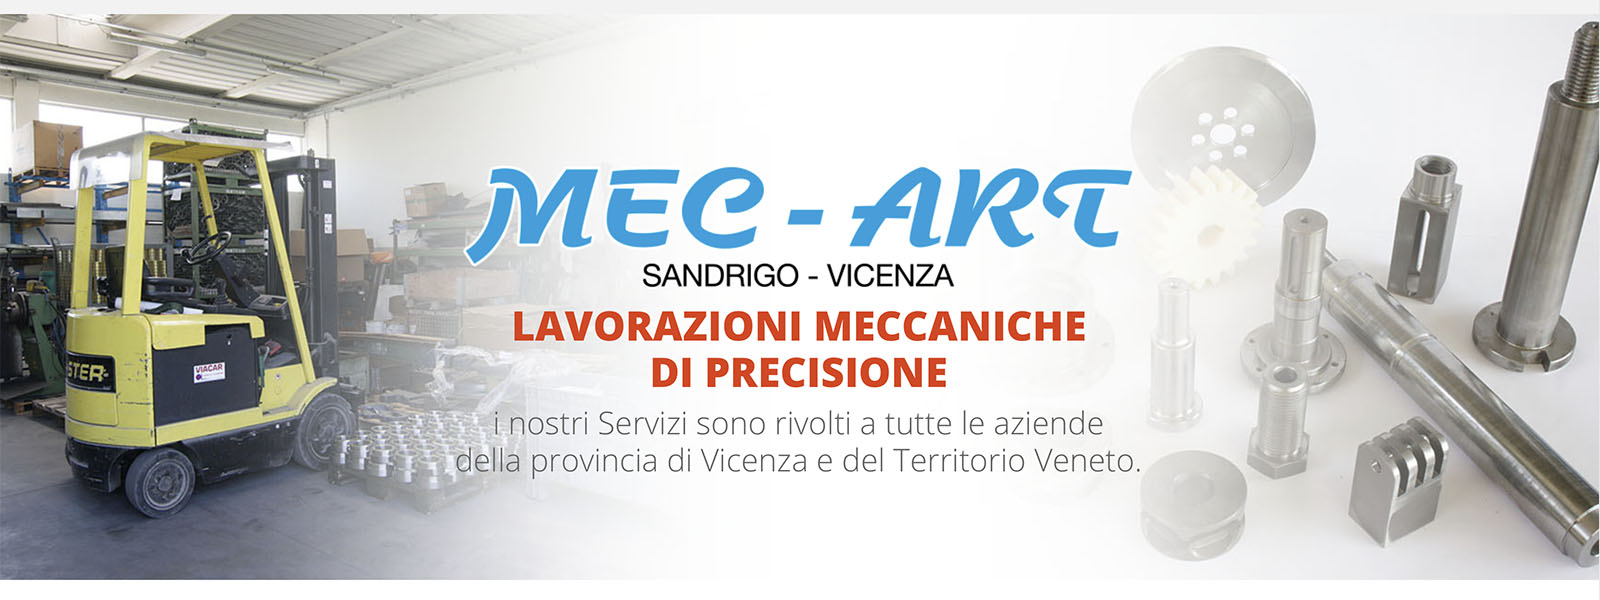 Sito Web MEC-ART Meccanica